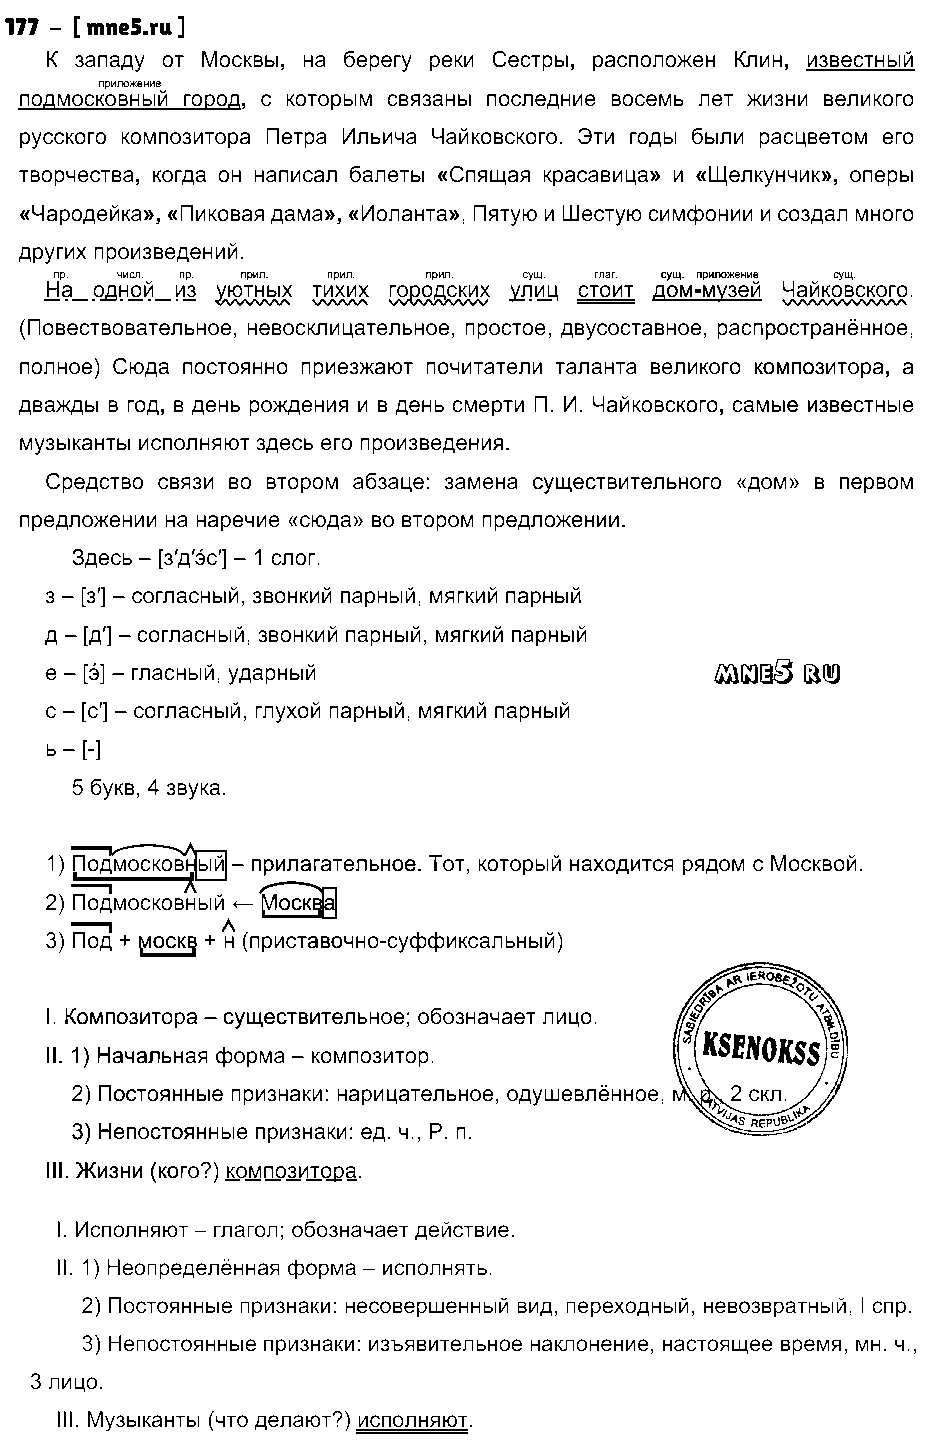 ГДЗ Русский язык 9 класс - 177